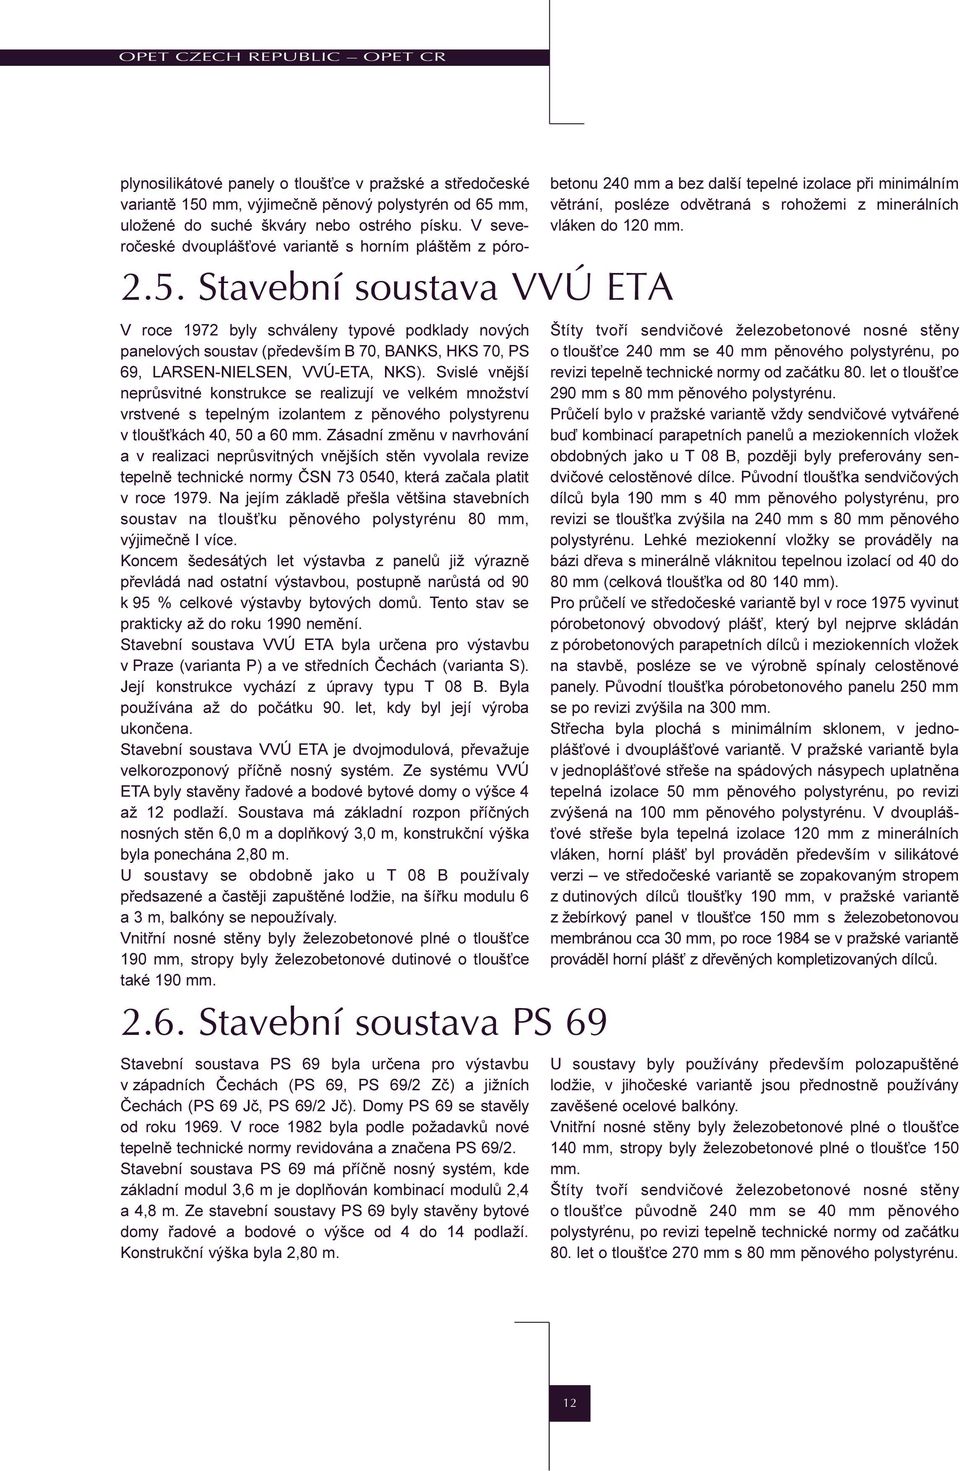 Zásadní zmìnu v navrhování a v realizaci neprùsvitných vnìjších stìn vyvolala revize tepelnì technické normy ÈSN 73 0540, která zaèala platit v roce 1979.